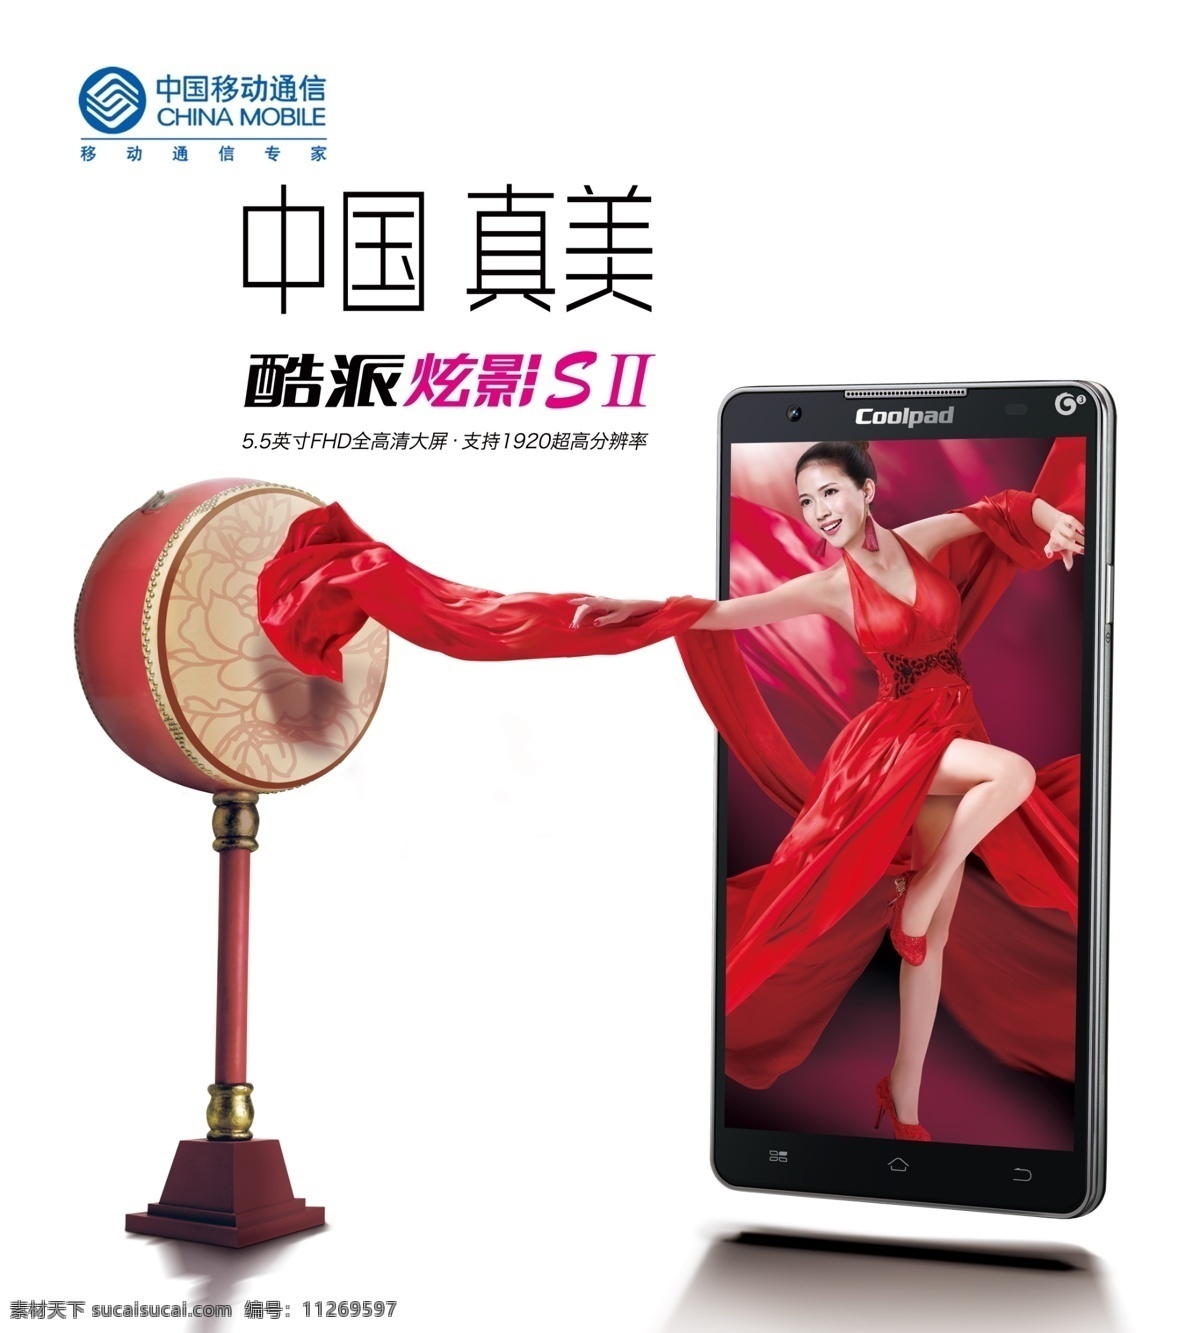 酷 派 手机 中国移动 广告 酷派手机 移动广告 鼓 手机广告 代言人 丝绸 中国风 美女与手机 广告设计模板 psd素材 红色